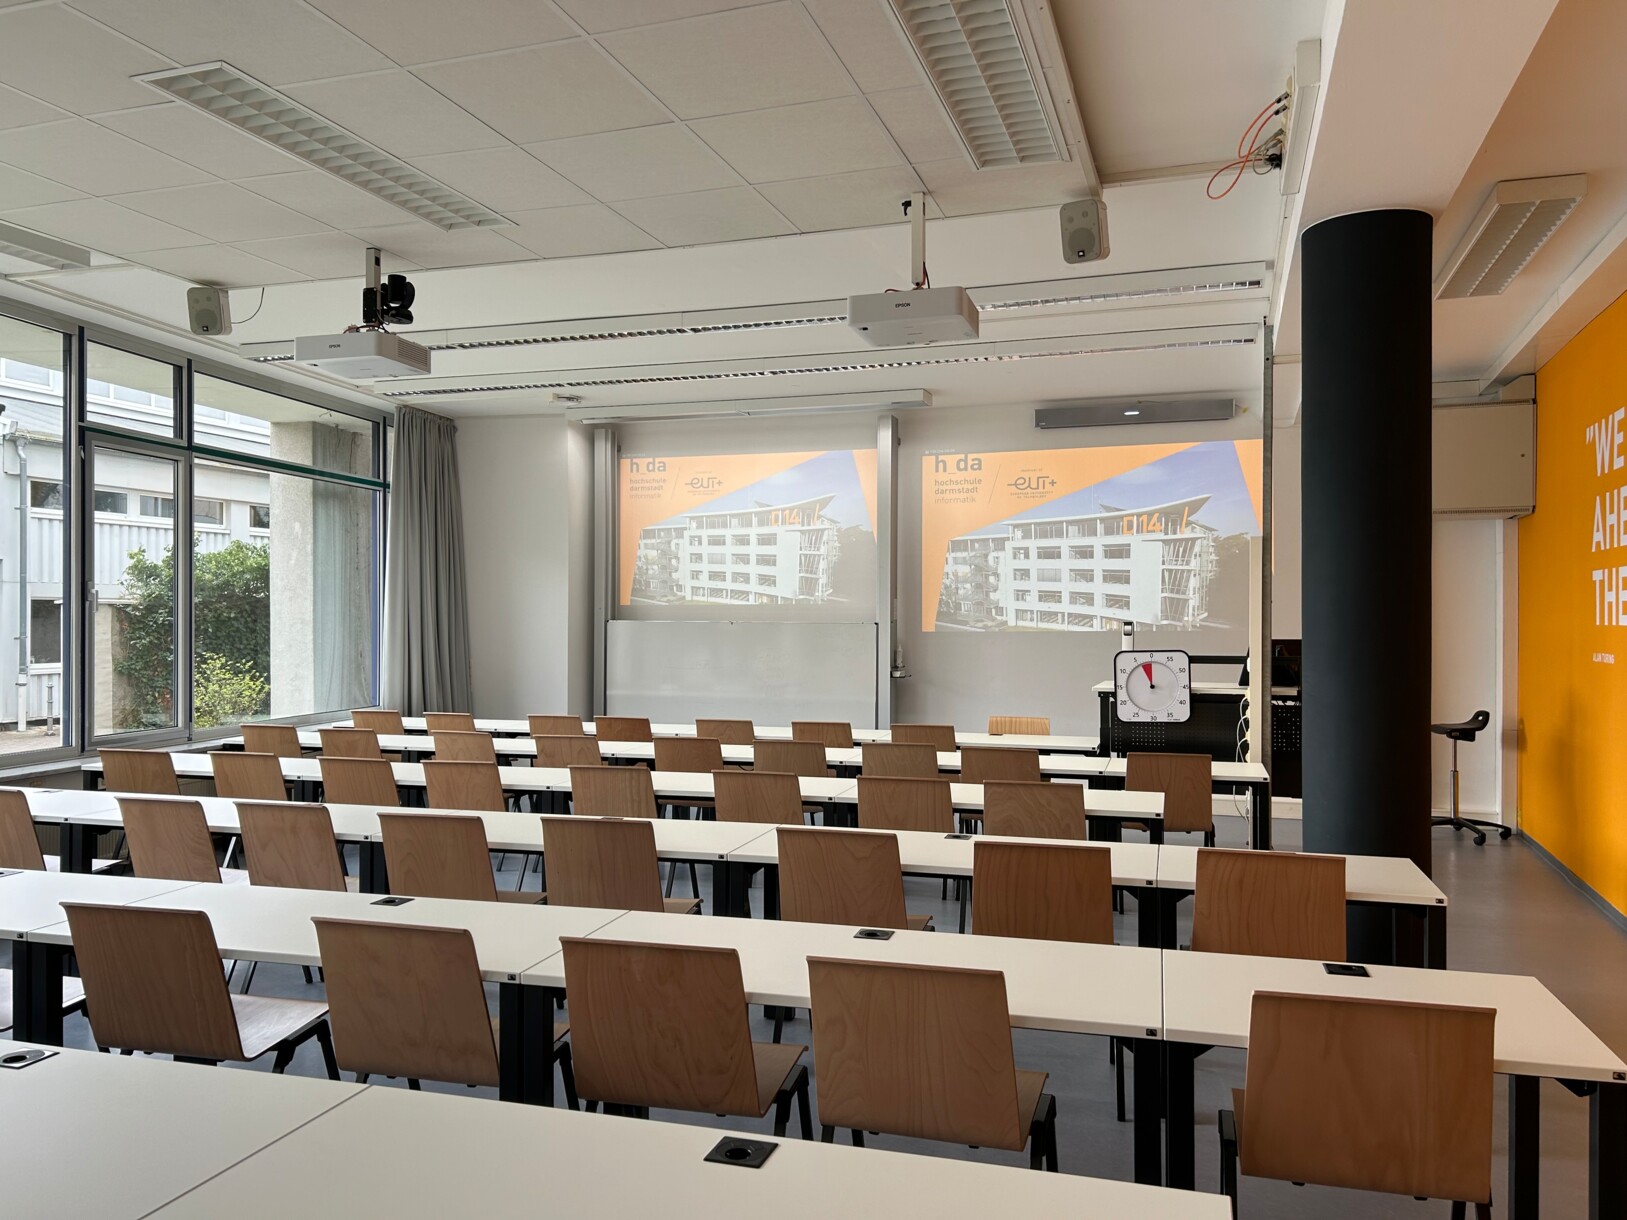 Bei Webkonferenzen ermöglichen die beiden Bildschirme, dass entfernte Teilnehmer auf dem linken Bildschirm und Lehrmaterialien auf dem rechten Bildschirm angezeigt werden.